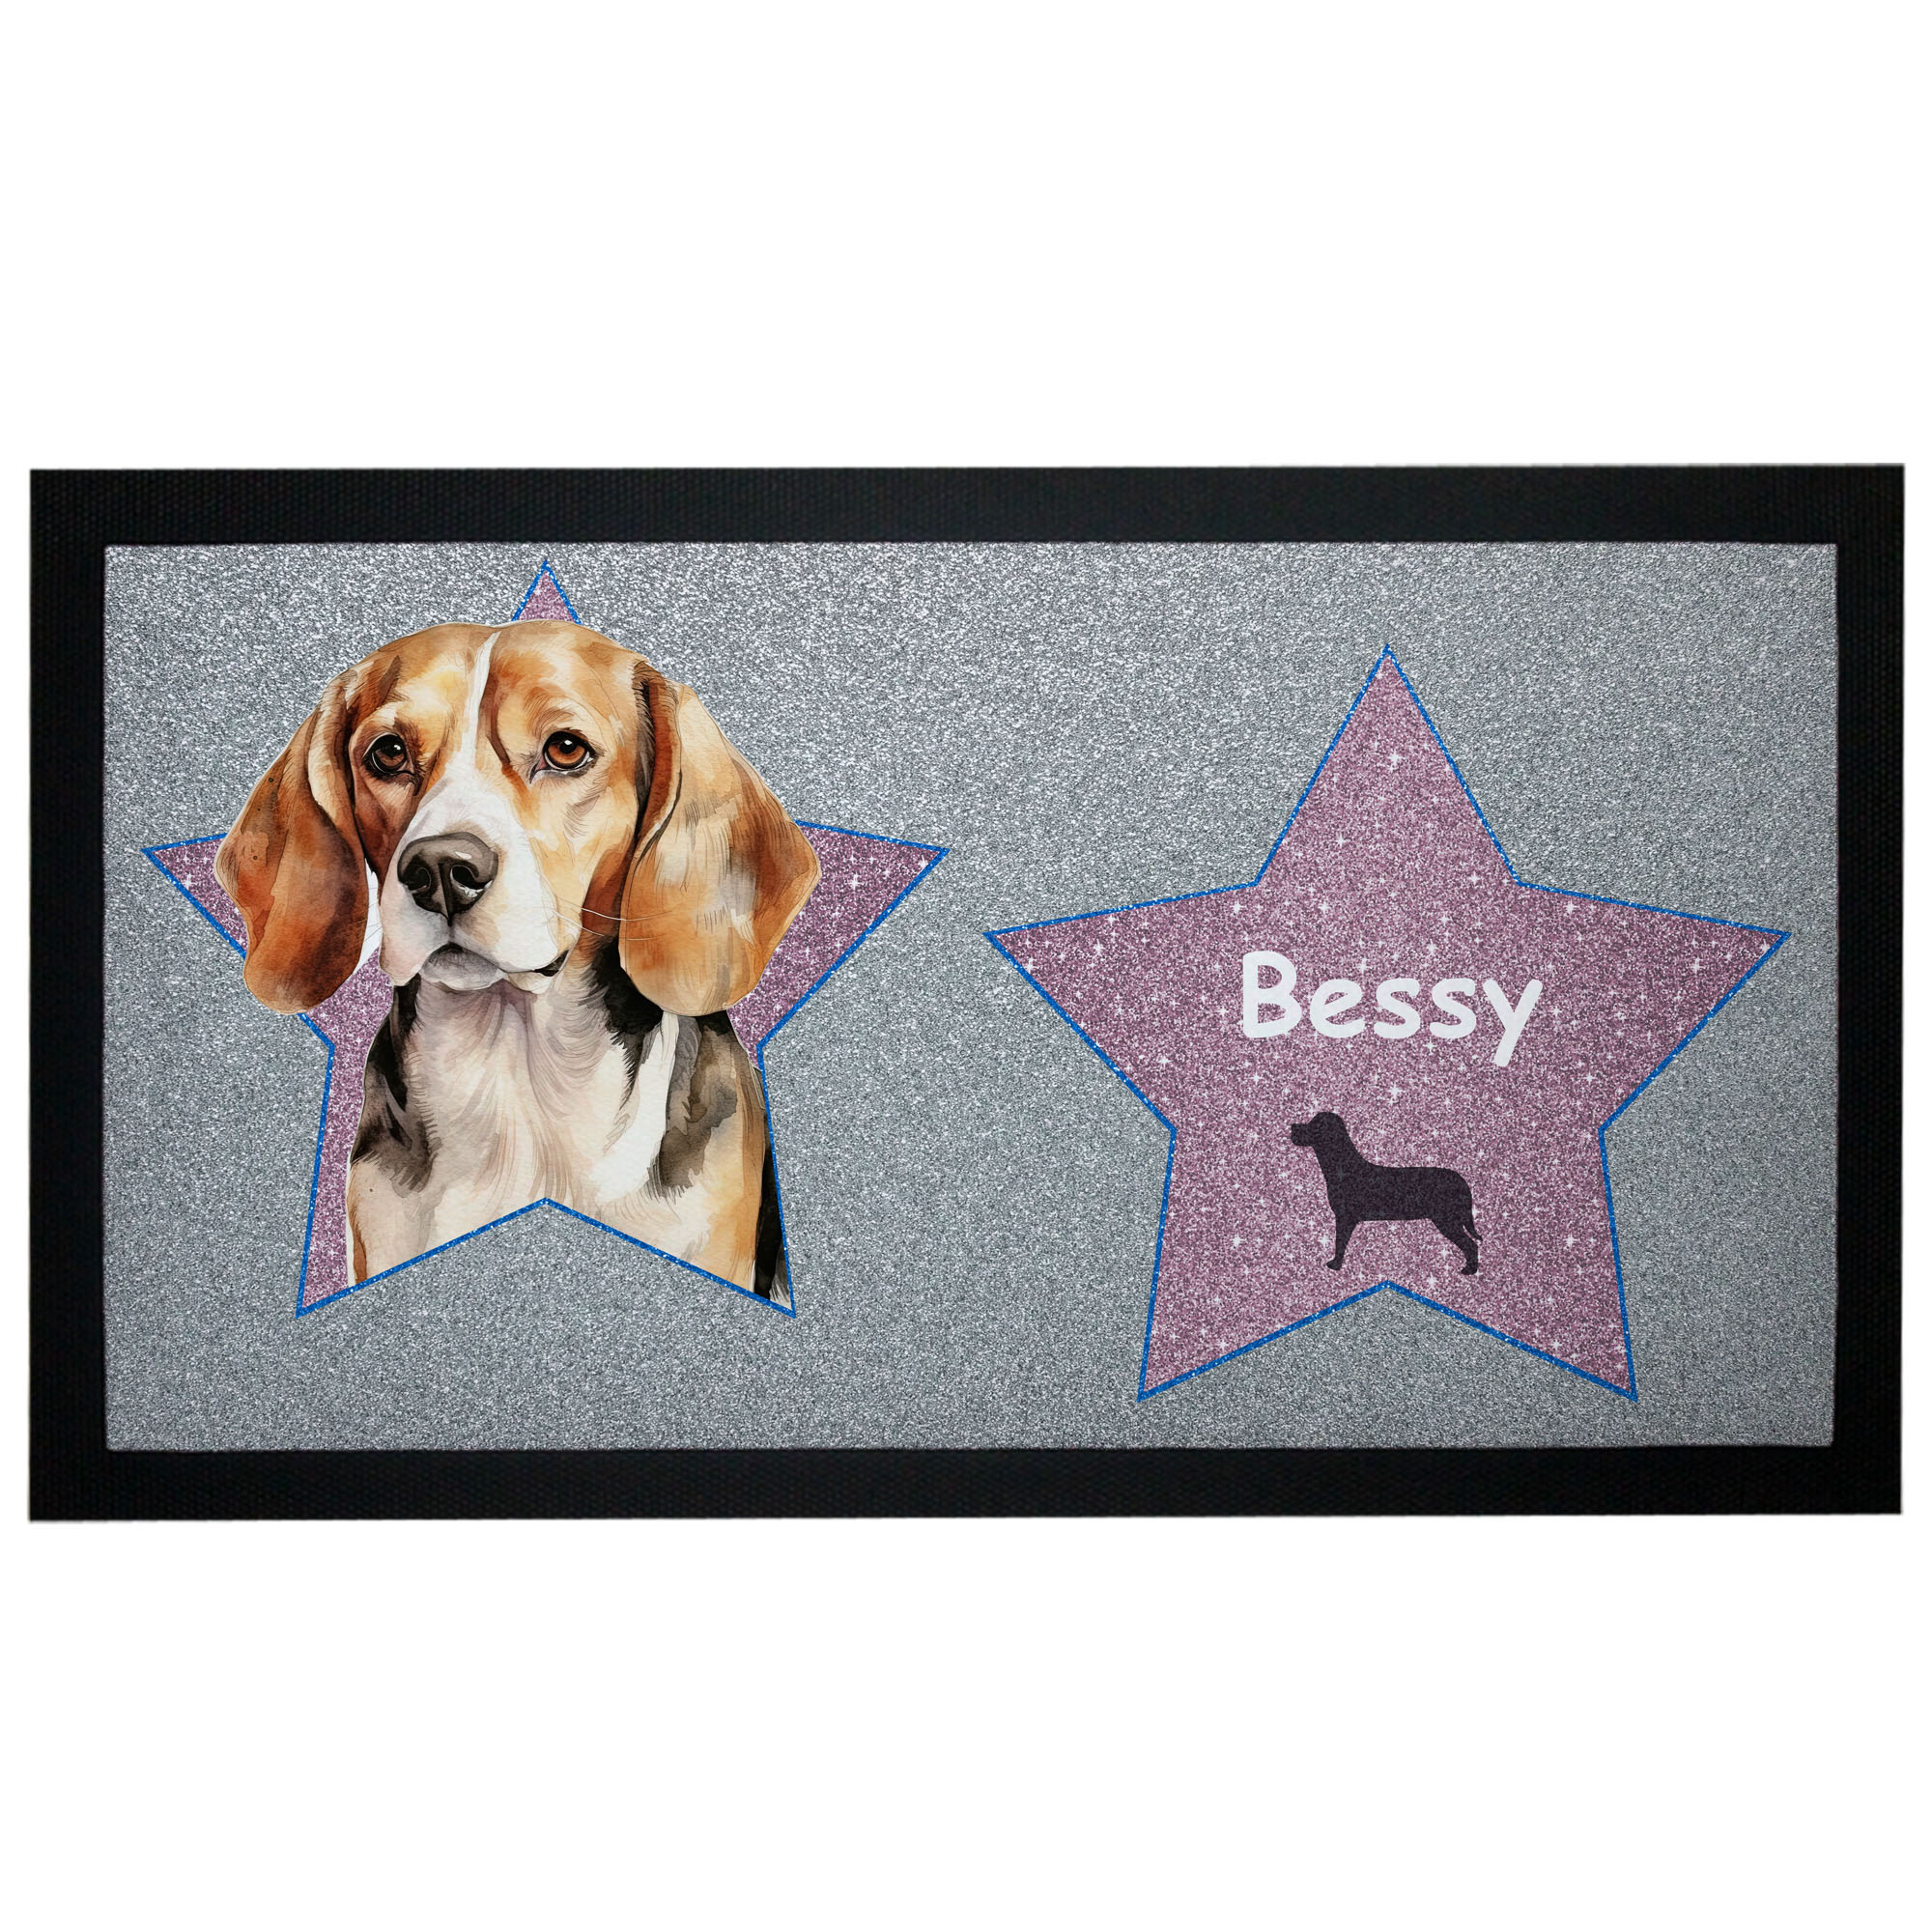 Napfunterlage Beagle mit Name Design Sterne - Walk of Hund